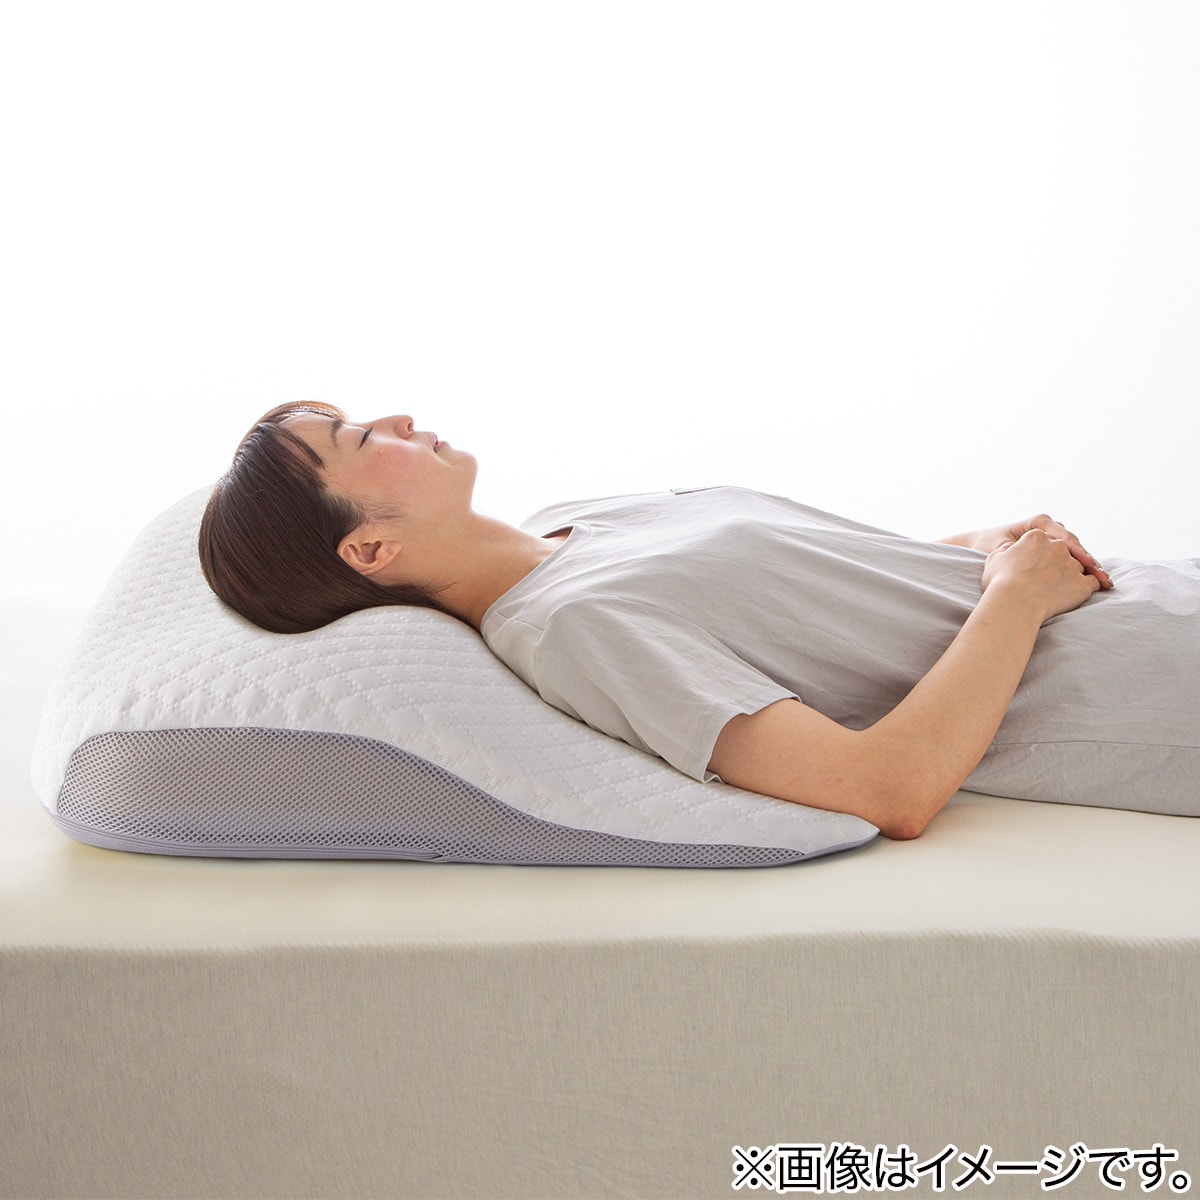 ❤低反発枕❤ 安眠 快眠まくら 低反発 頸椎保護枕 横向き寝枕 頭・肩を